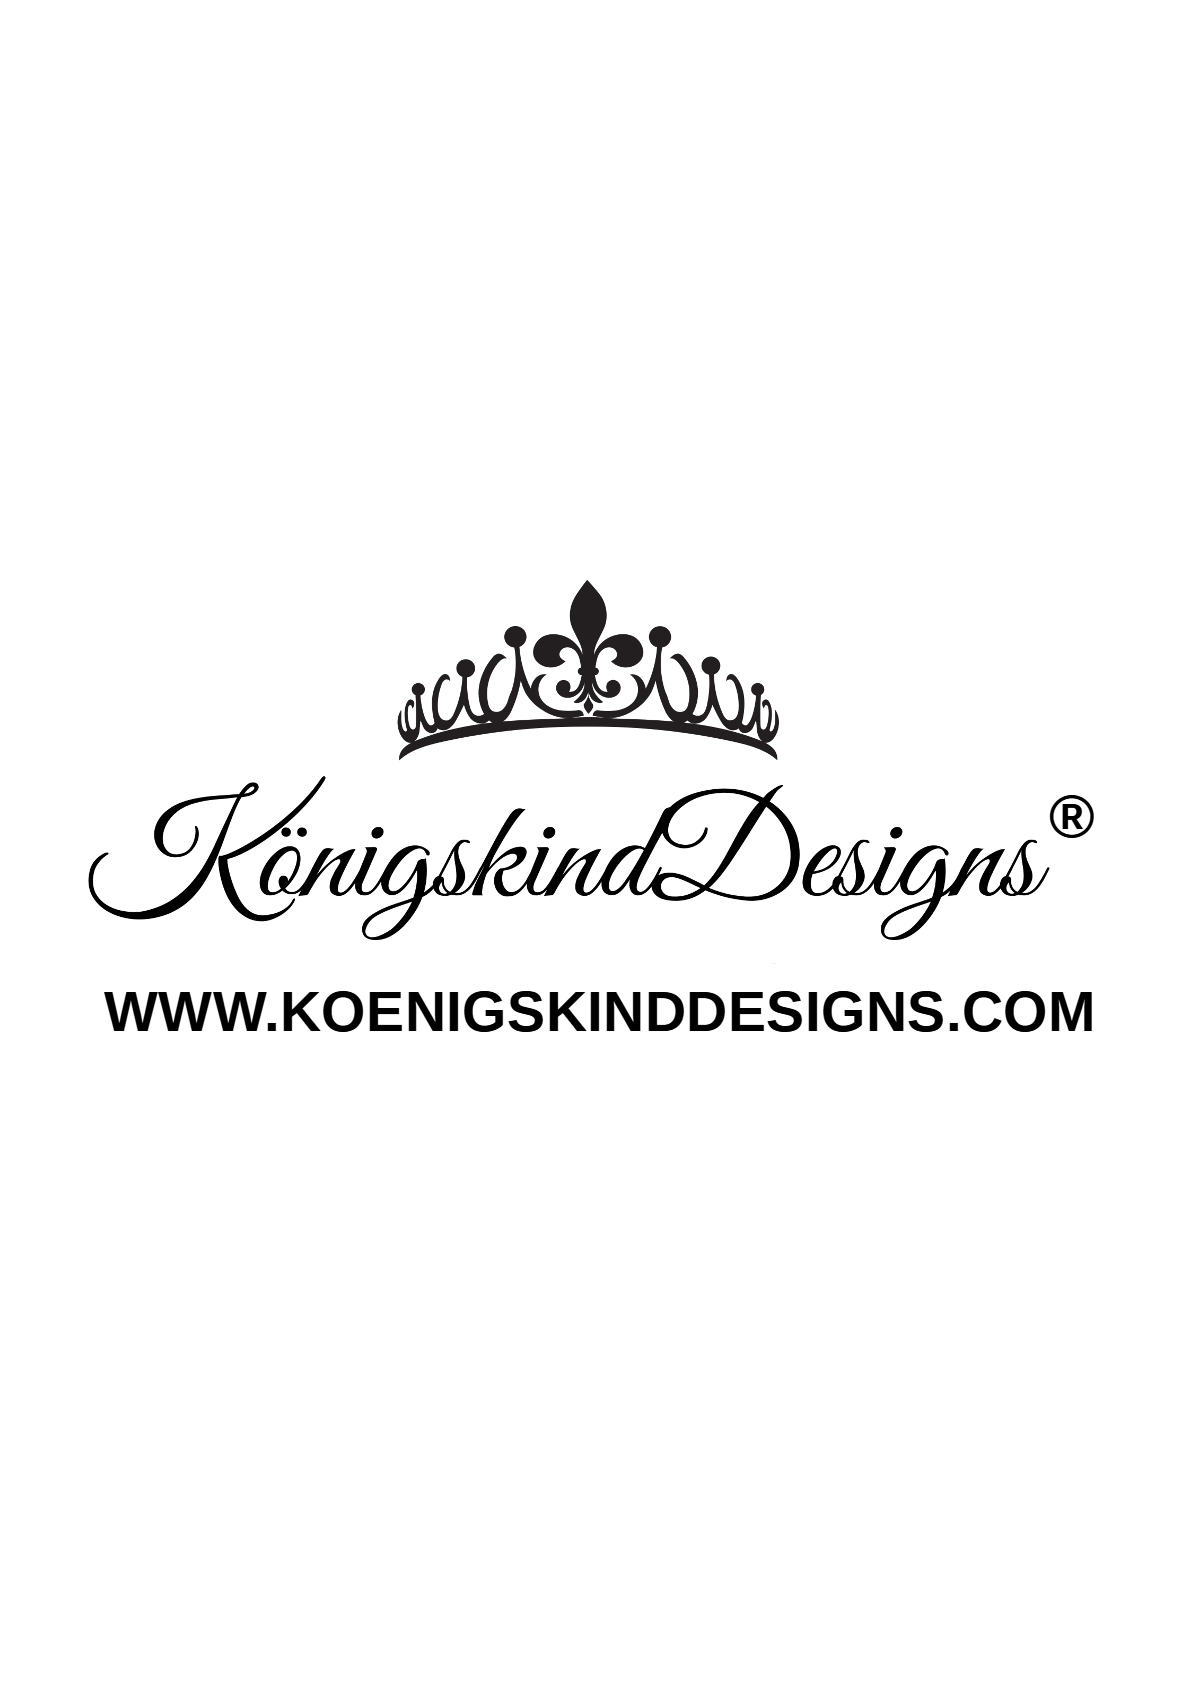 (c) Koenigskinddesigns.com